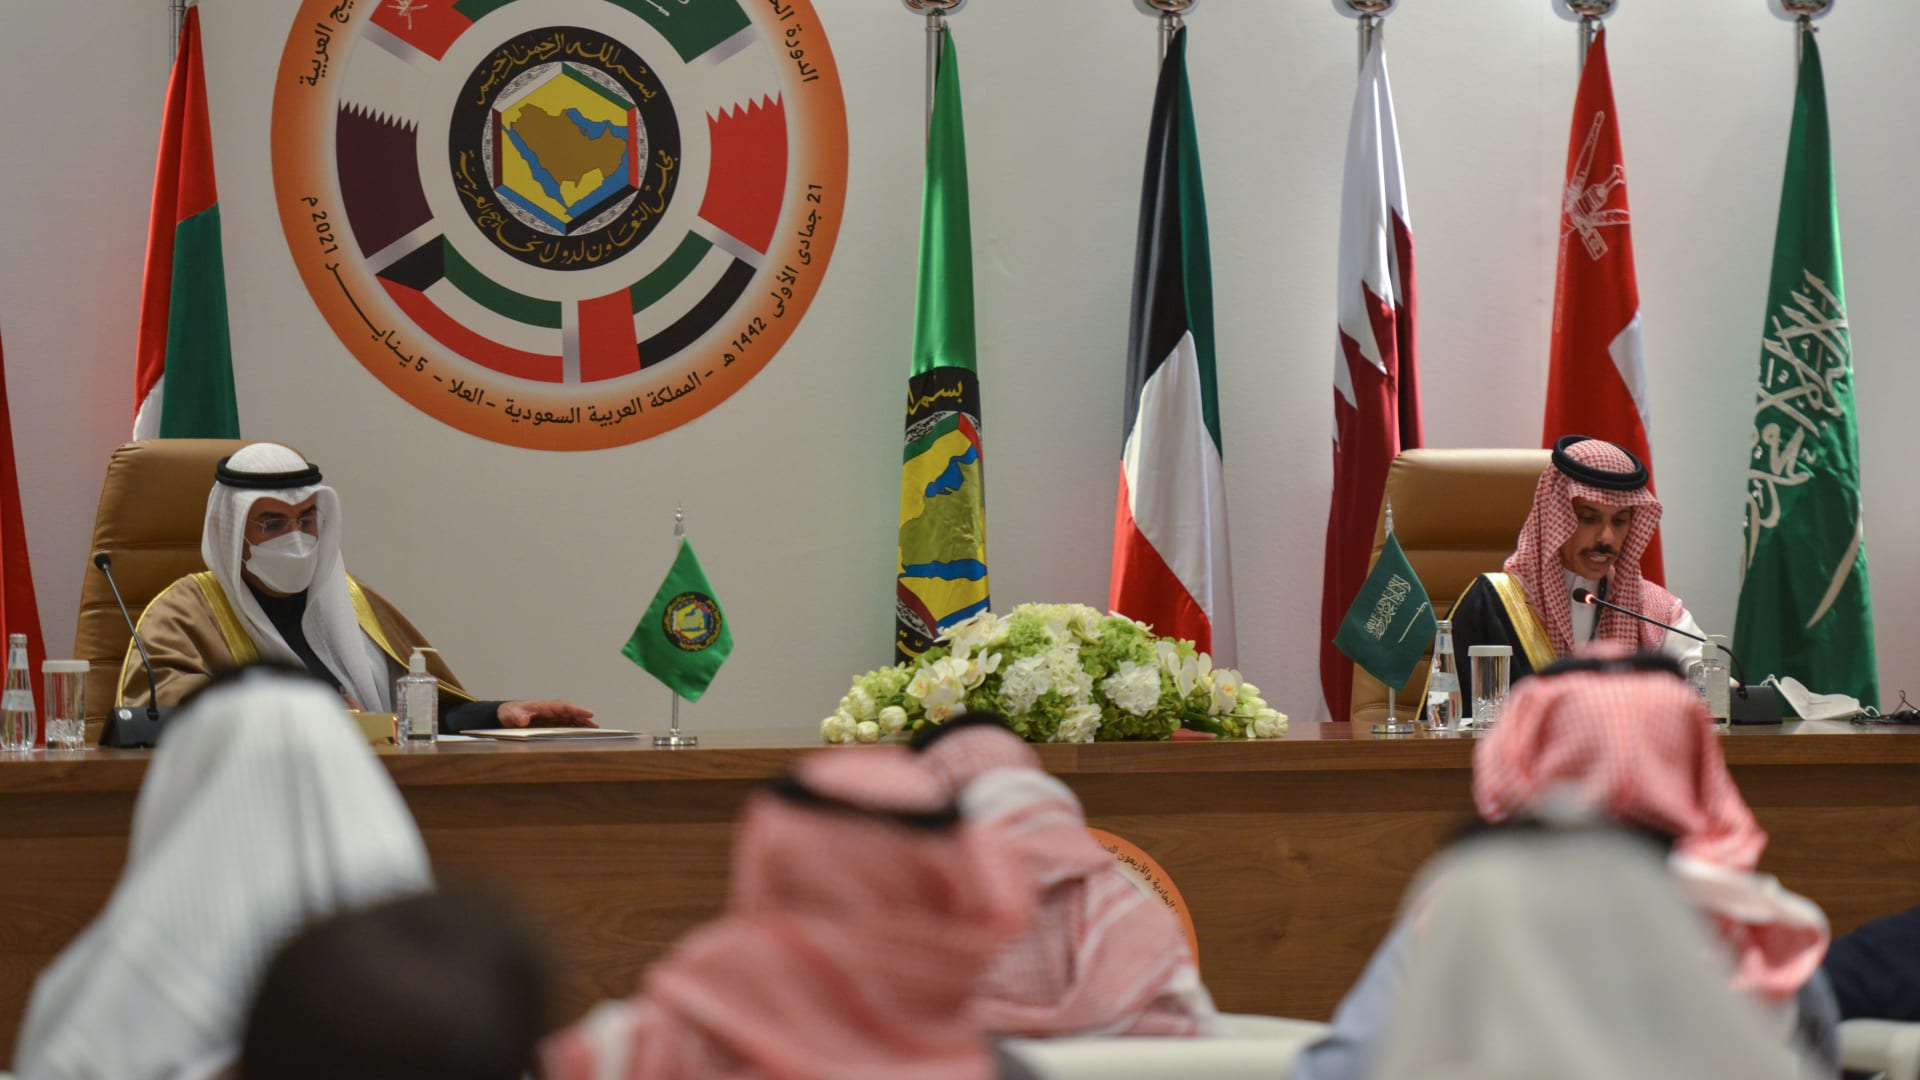 محمد بن سلمان في افتتاح القمة الخليجية: نحتاج إلى توحيد جهودنا لمواجهة التحديات خاصة تهديدات النظام الإيراني